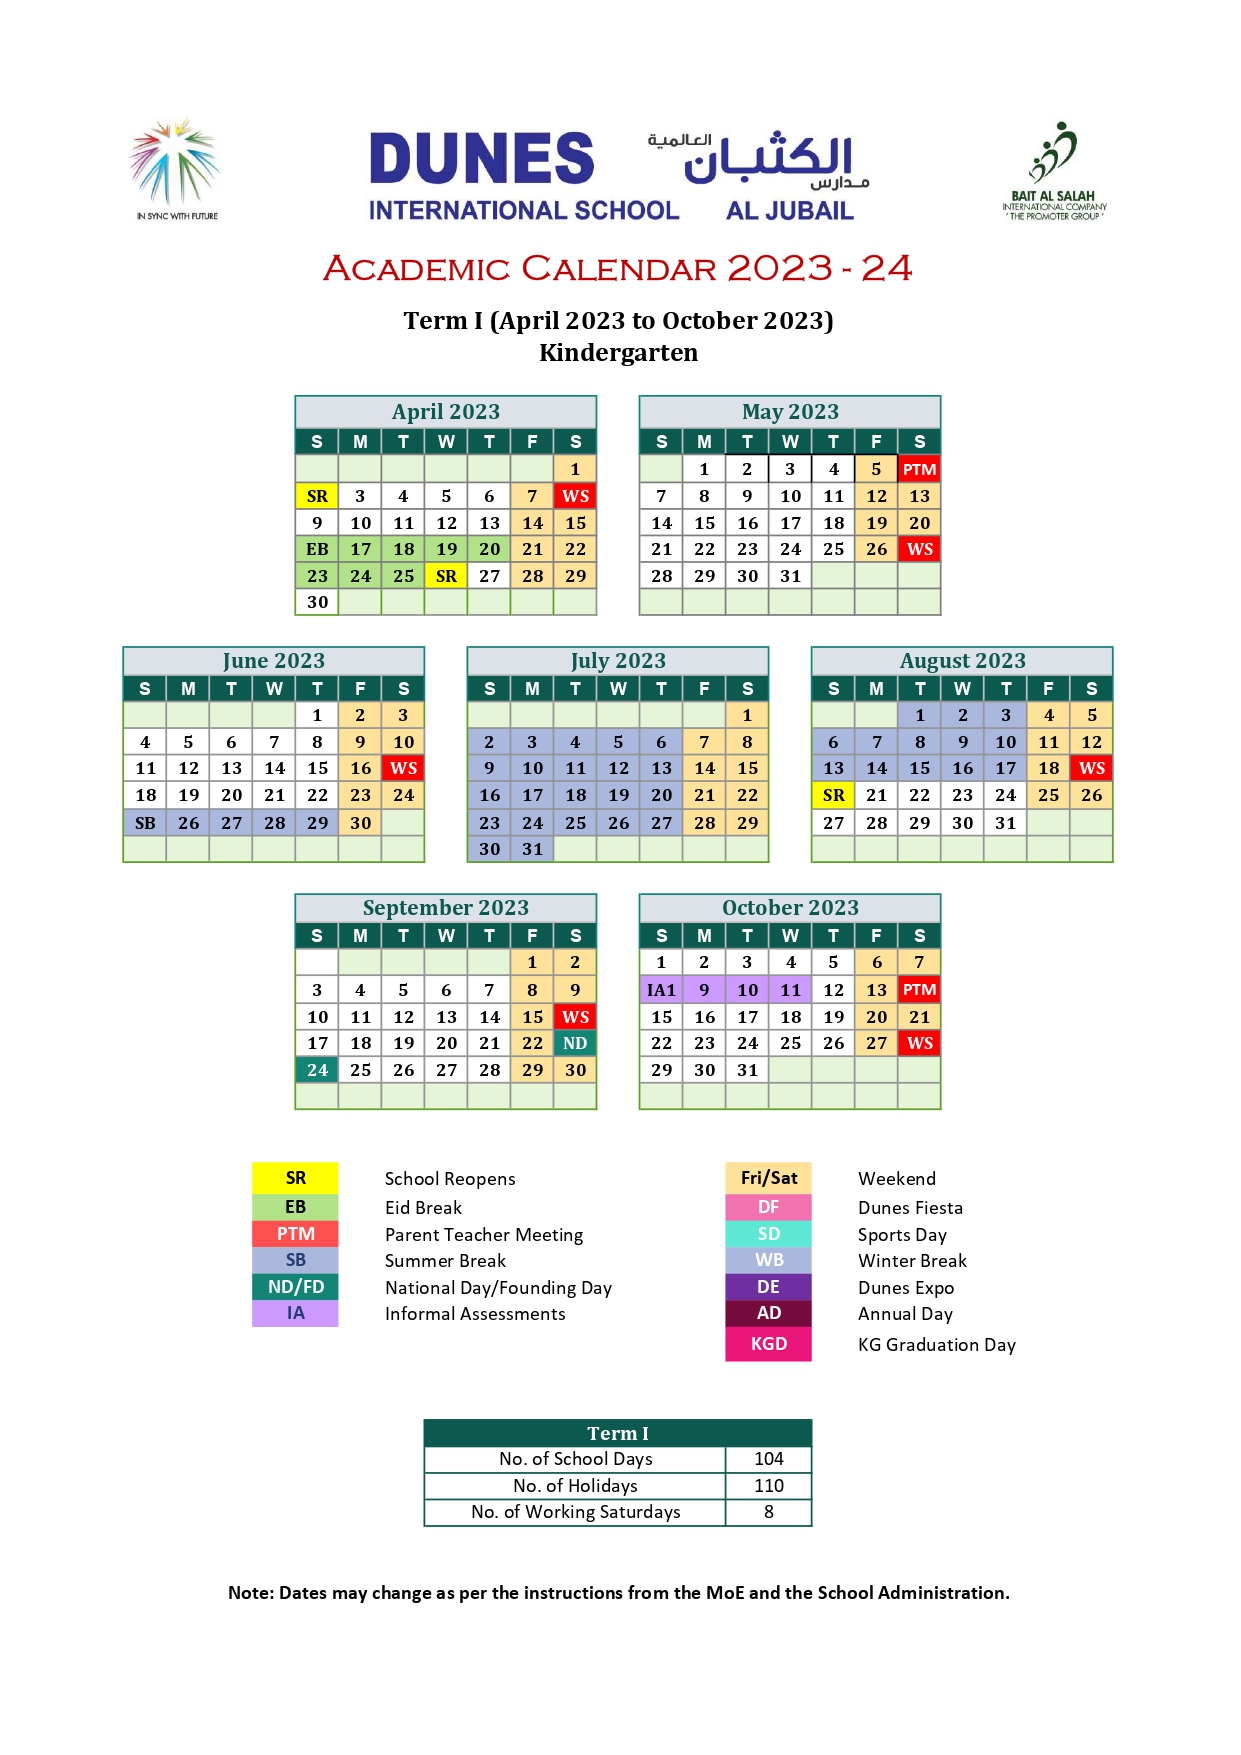 academic-calendar-dunes-internationals-school